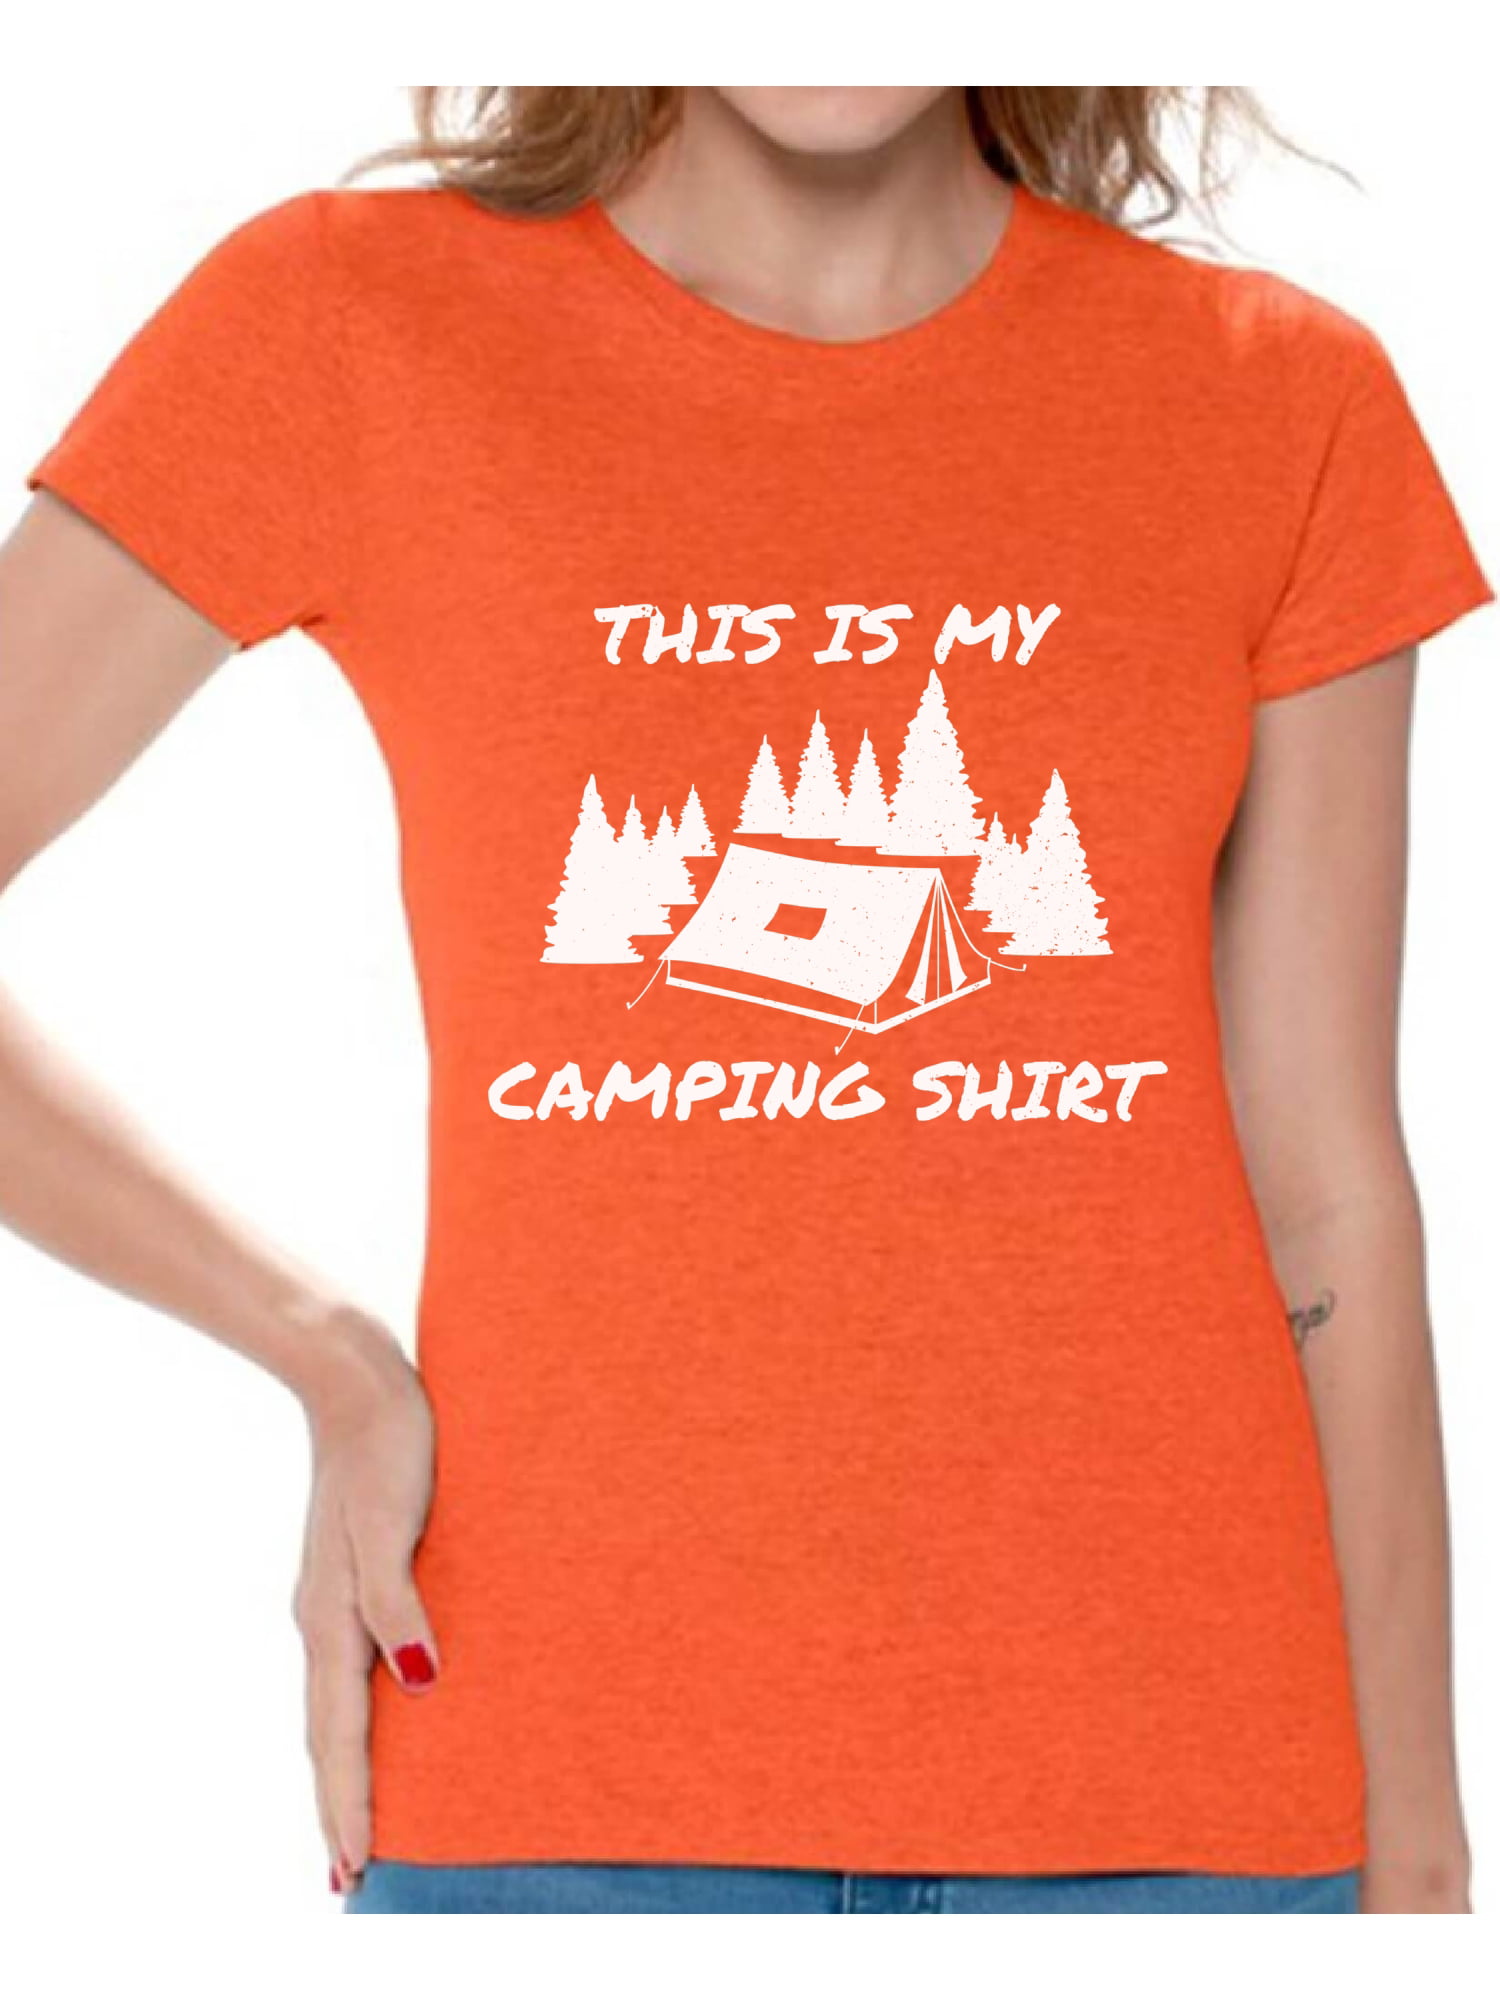 Camping T Shirt Camp Shirt Camping Shirts Tropical Shirt Vacation Shirt Vintage Shirt Retro Shirt Camp Life Shirt